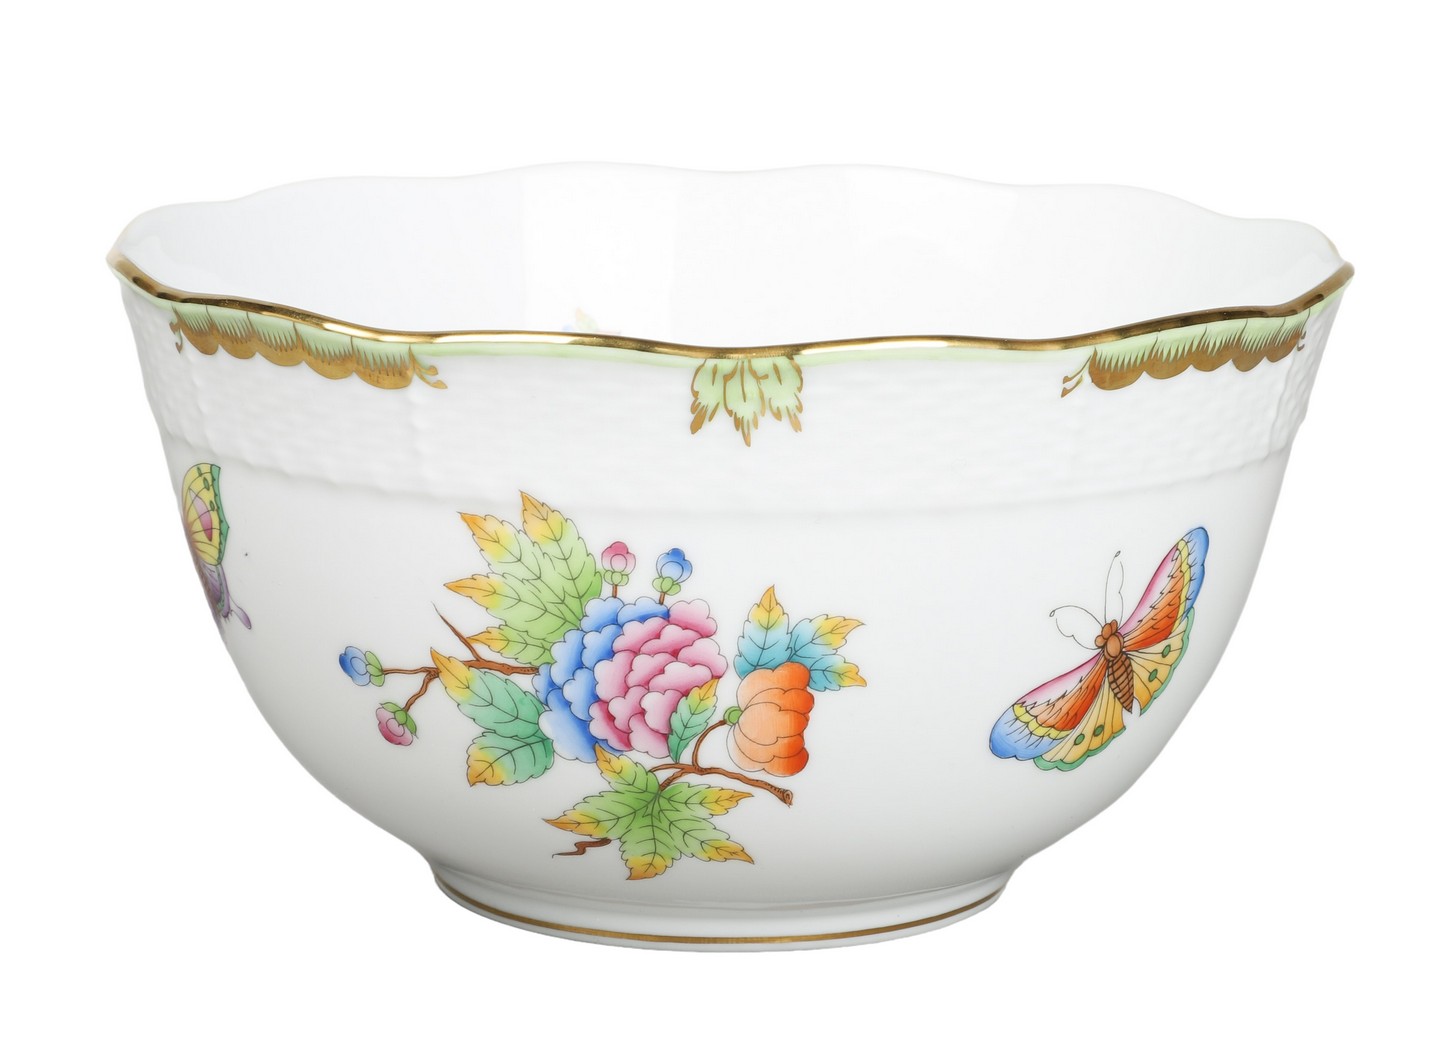 Herend porcelain serving bowl,